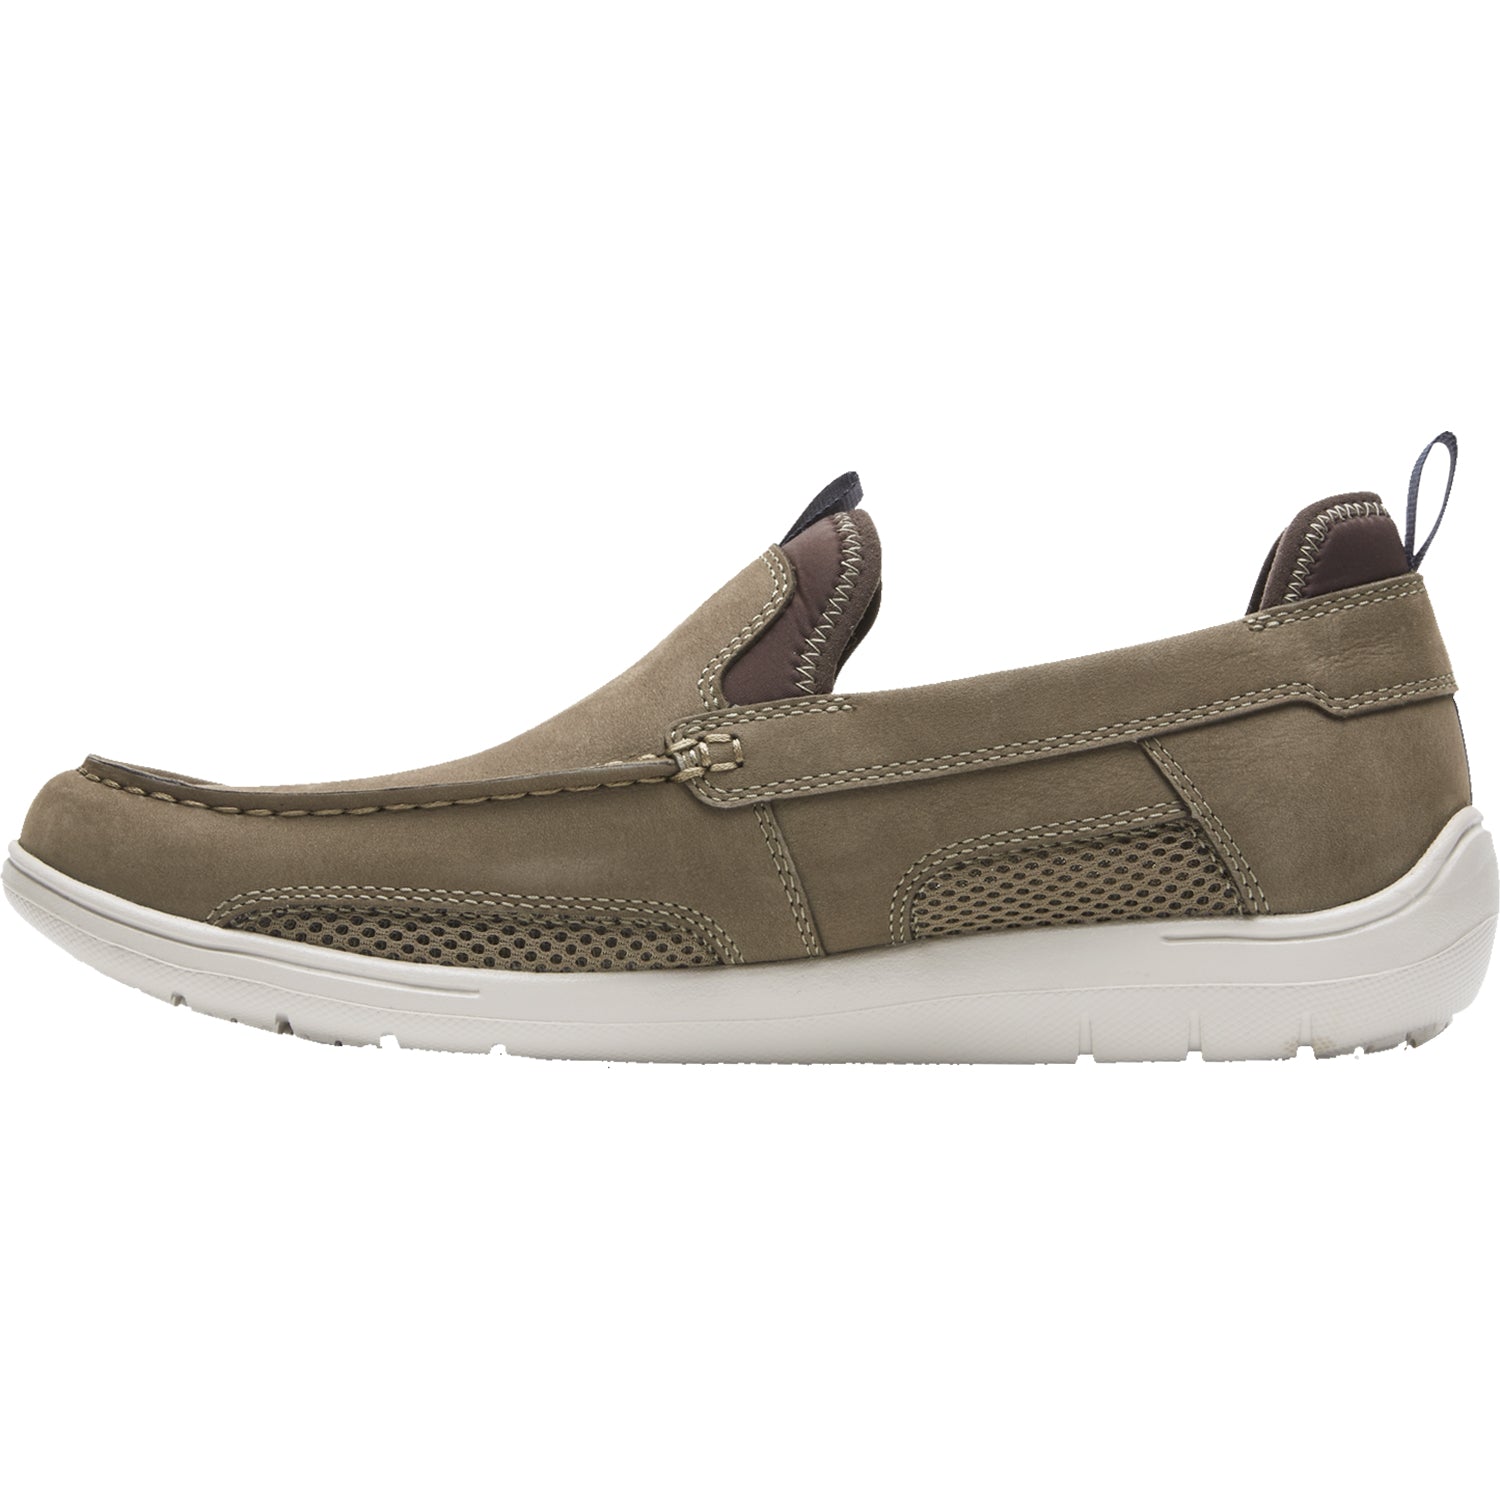 Dunham Fitsmart Loafer | Men's Slip-On Shoes | Footwear etc.